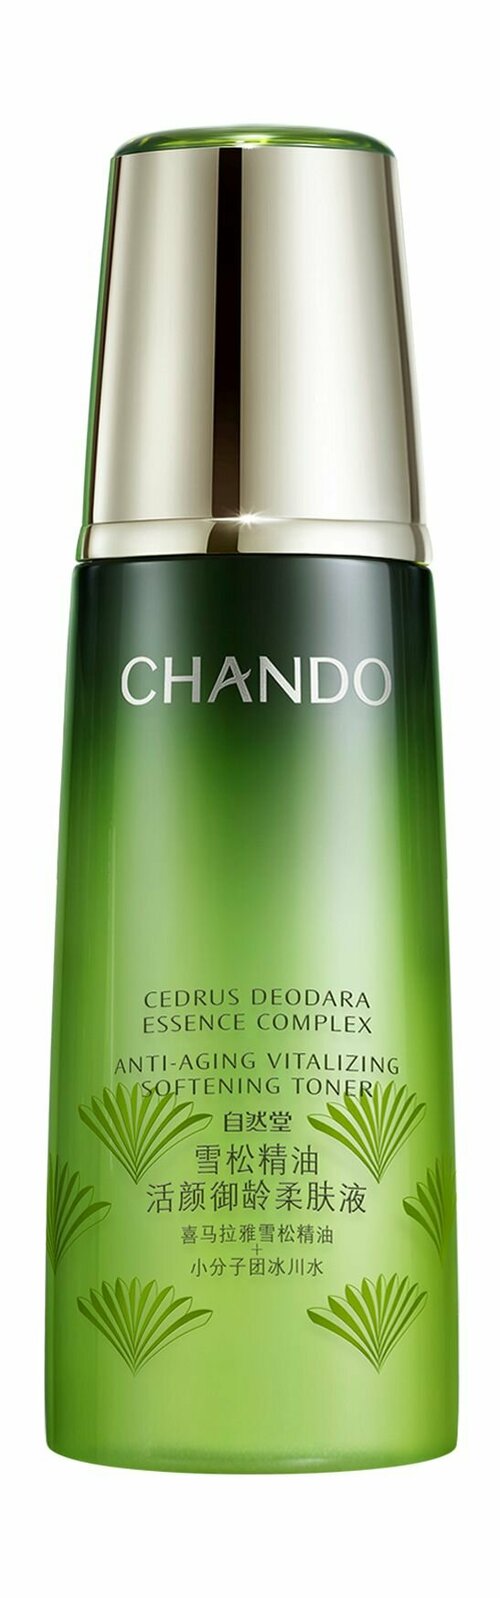 Антивозрастной смягчающий тонер для лица с гималайским кедром / Chando Himalaya Cedrus Deodara Anti-Aging Vitalizing Softening Toner